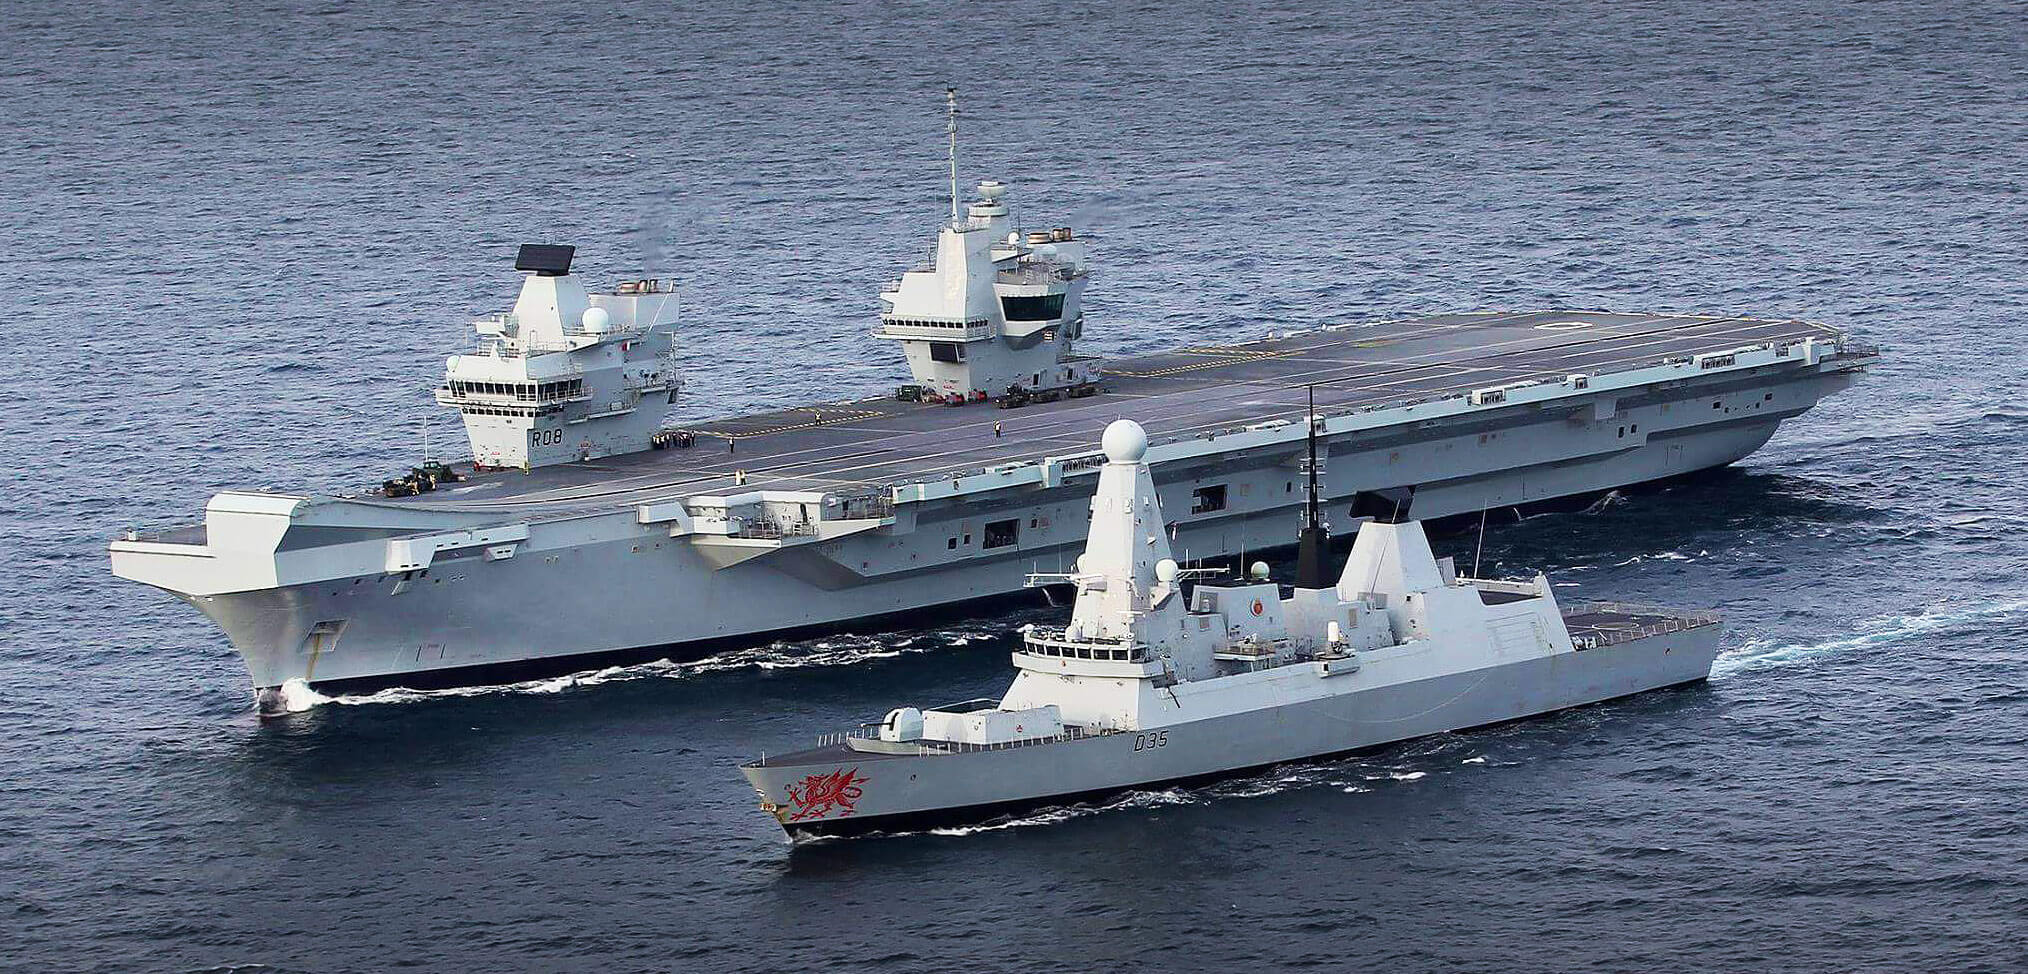 Επίδειξη εθνικής ανεξαρτησίας από την Βρετανία στην Μάγχη – Έστειλε 4 πολεμικά πλοία ανήμερα του Brexit